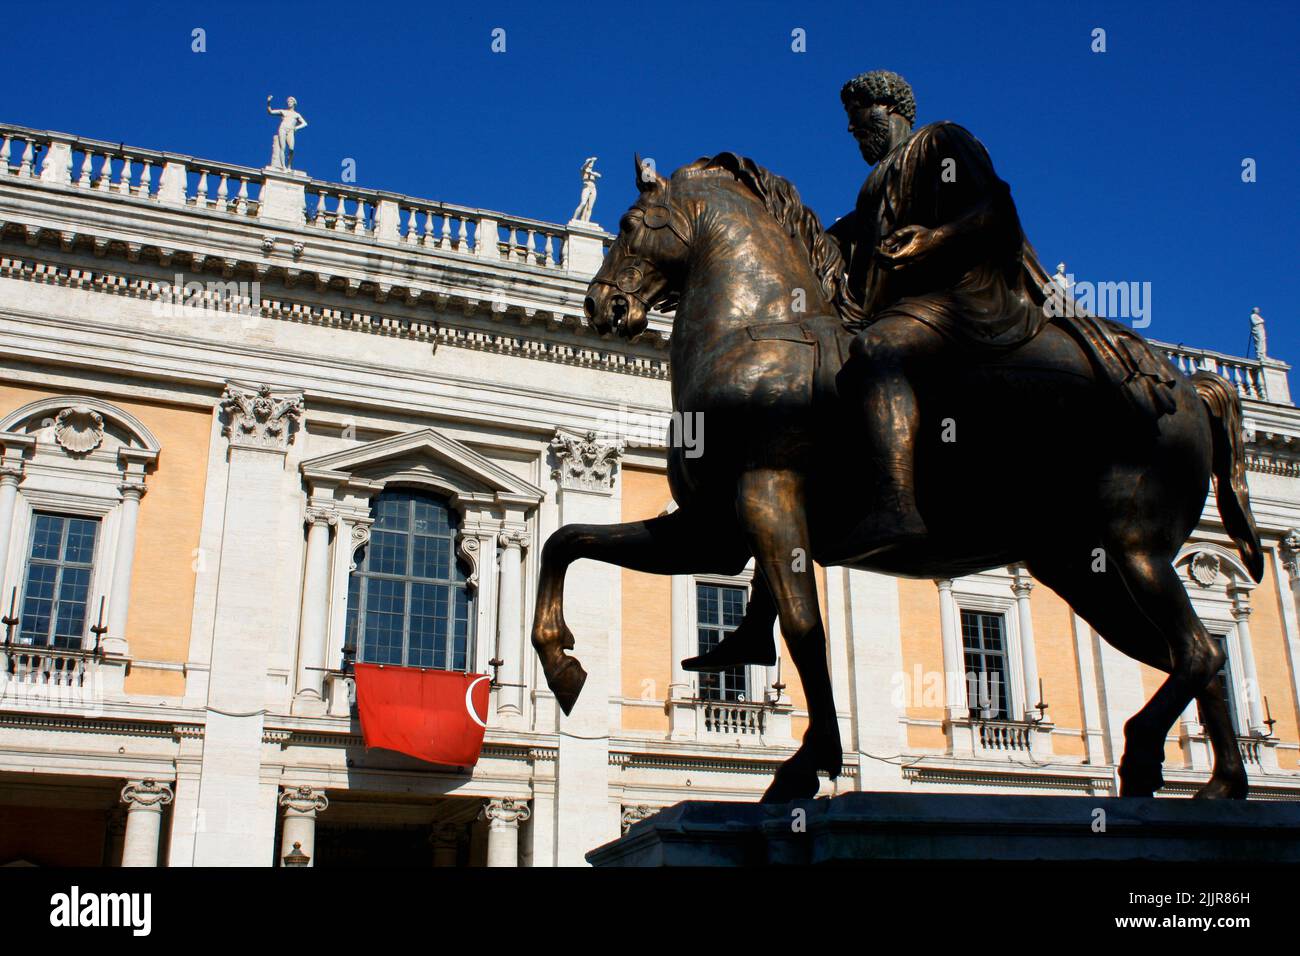 Piazza del Campidoglio - Statue Marco Aurelio at the Capitoline Hill in Rome, Italy Stock Photo